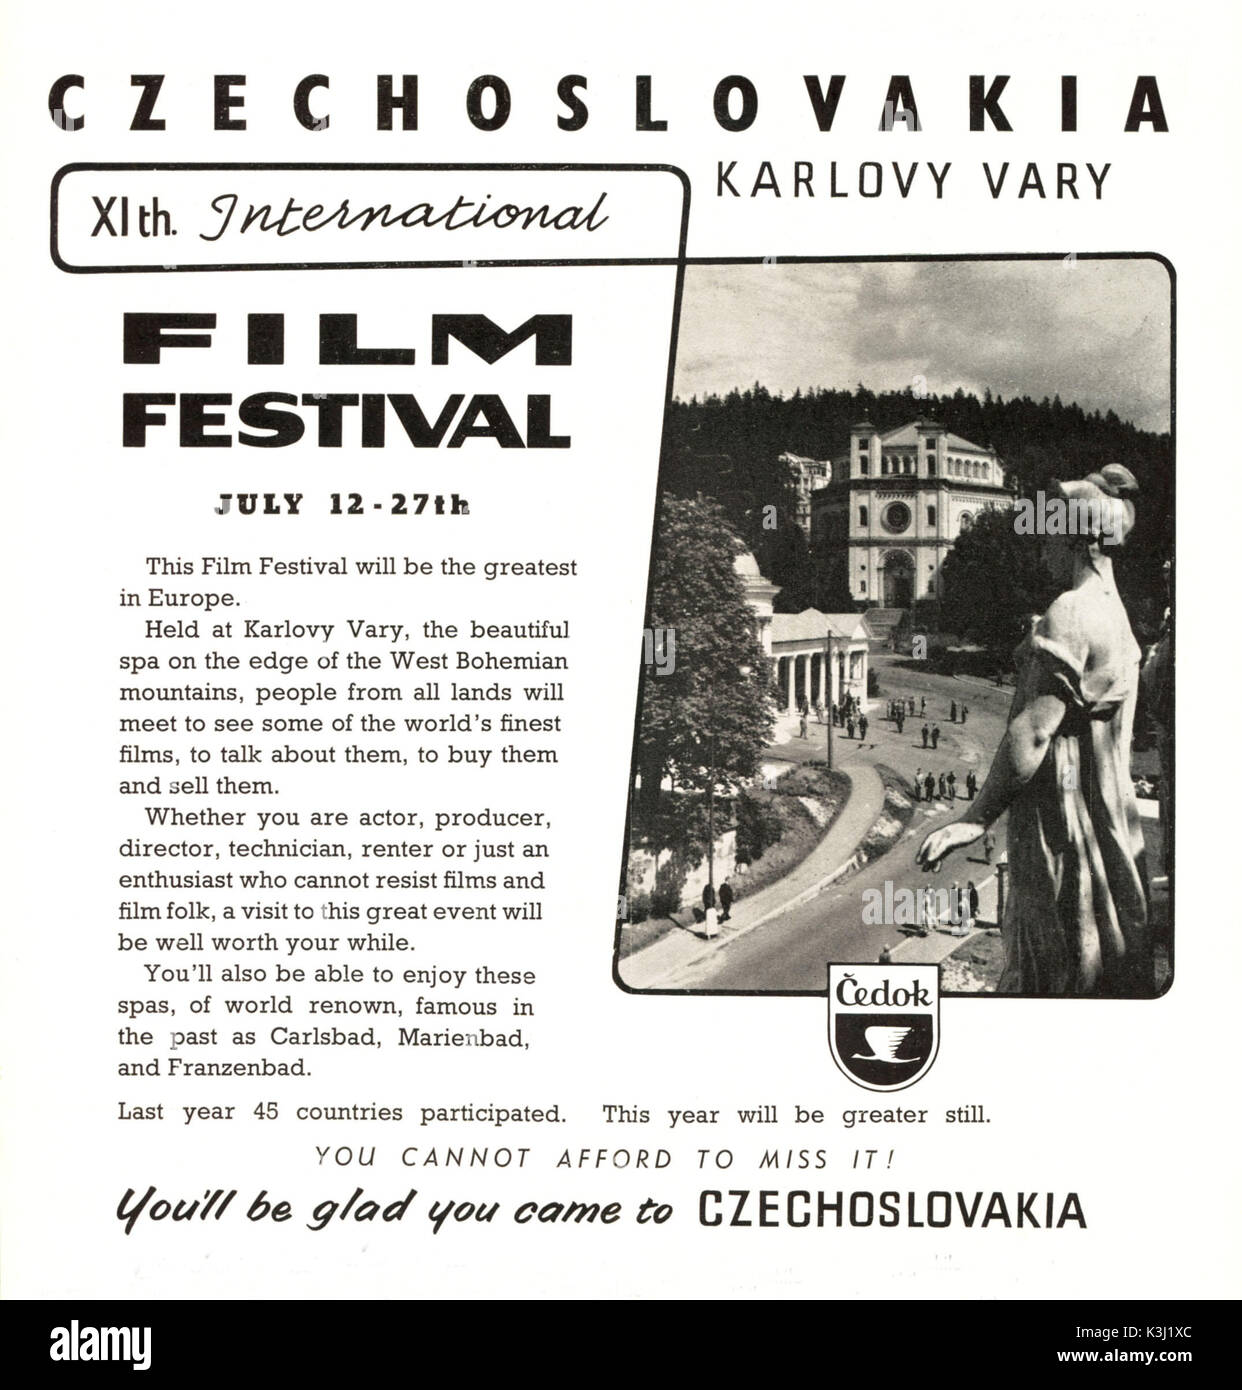 KARLOVY VARY FILM FESTIVAL POSTER - JULY 1958 Stock Photo